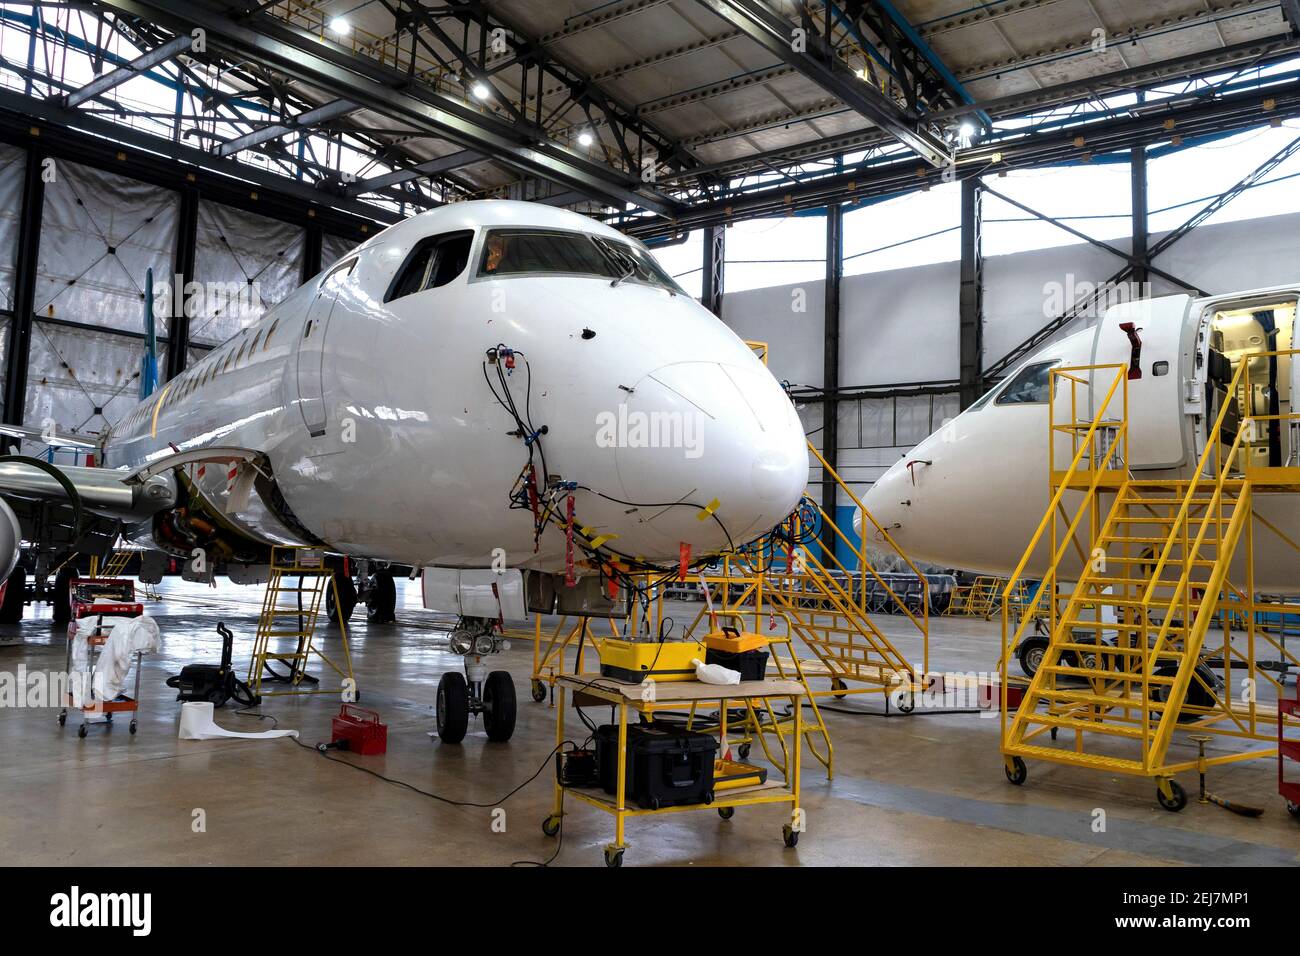 Flugzeuge befinden sich im Hangar für technische Reparatur und Wartung. Flugzeugdiagnose, Lagerung, Service. Ebene. Leitern für Mechaniker. Stockfoto